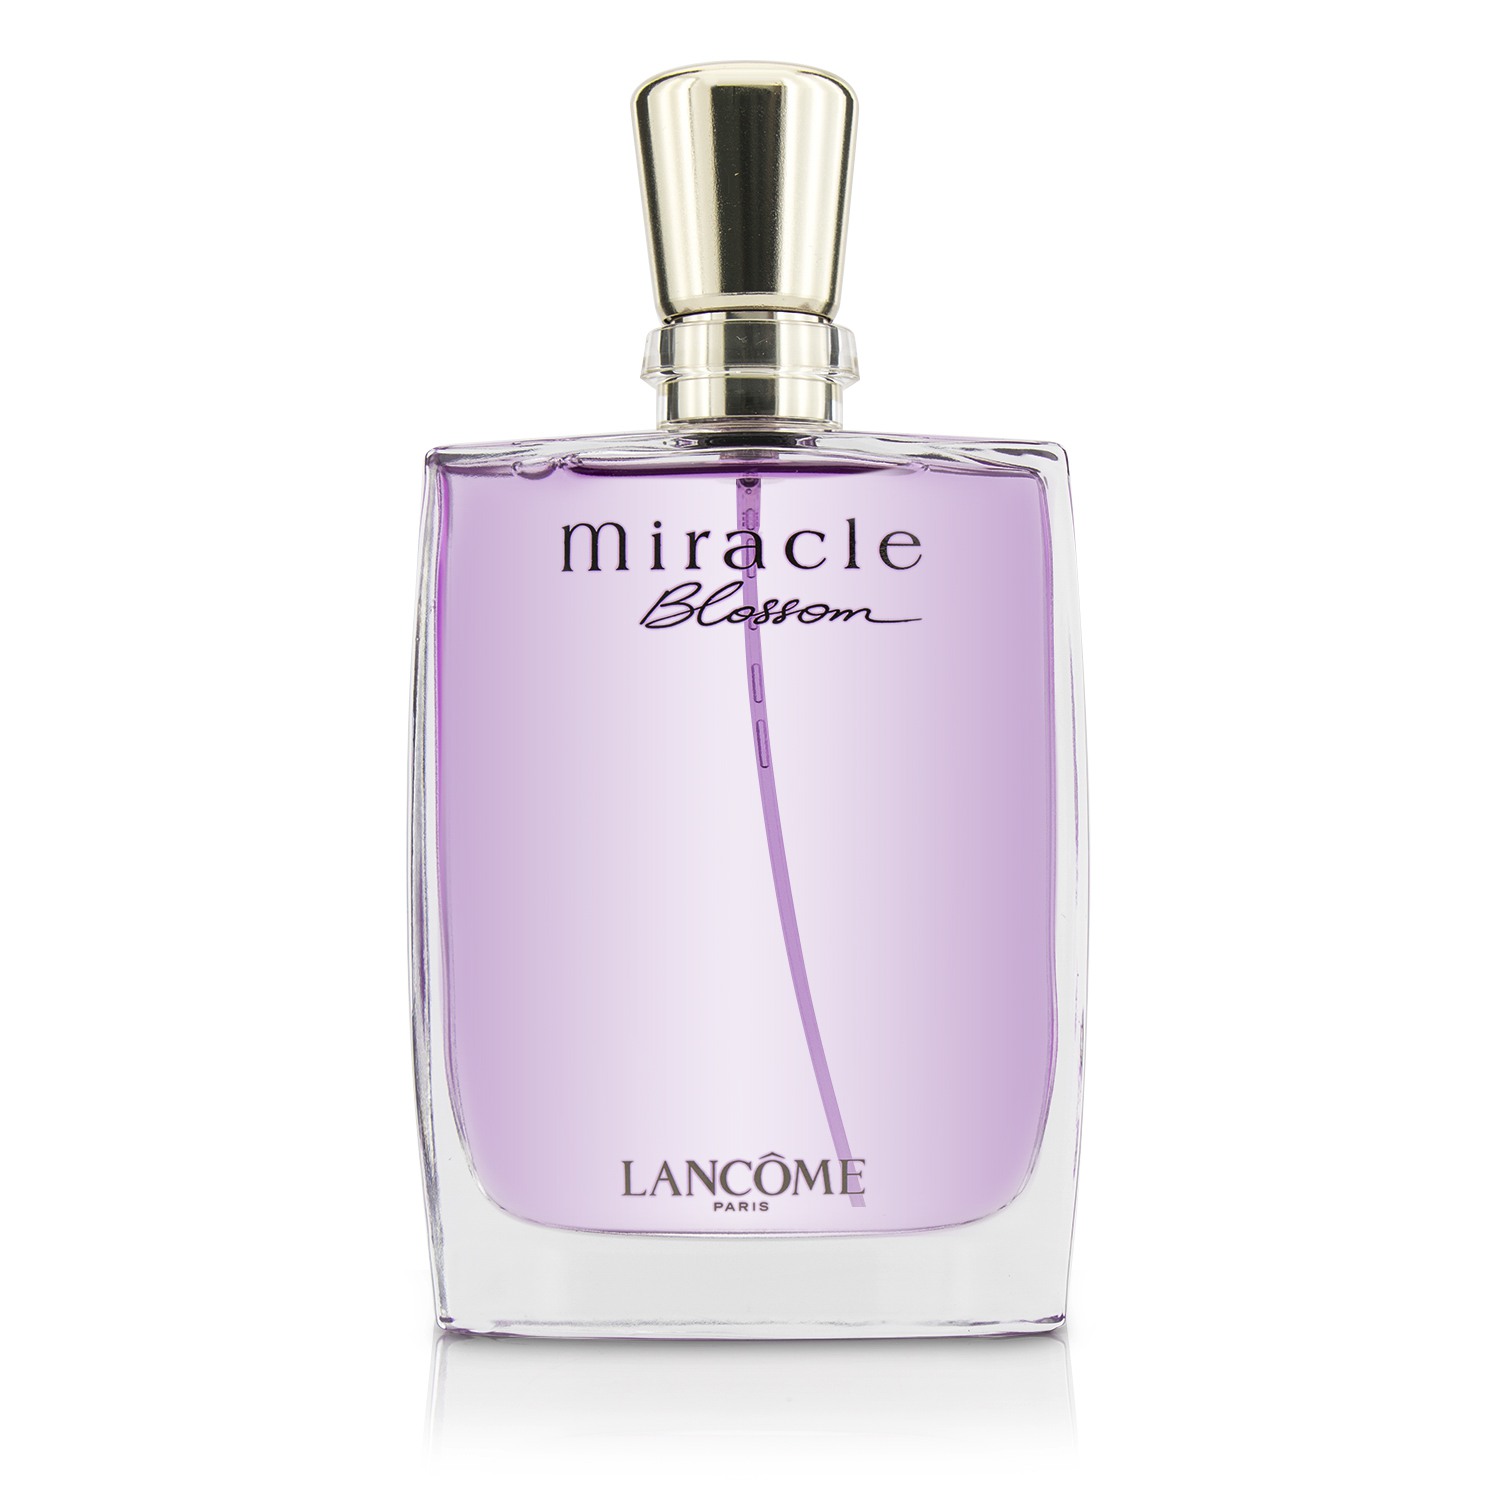 蘭蔻Lancome - Miracle Blossom 真愛奇蹟香水(花漾版) | 草莓網Strawberrynet直營店| 樂天市場Rakuten